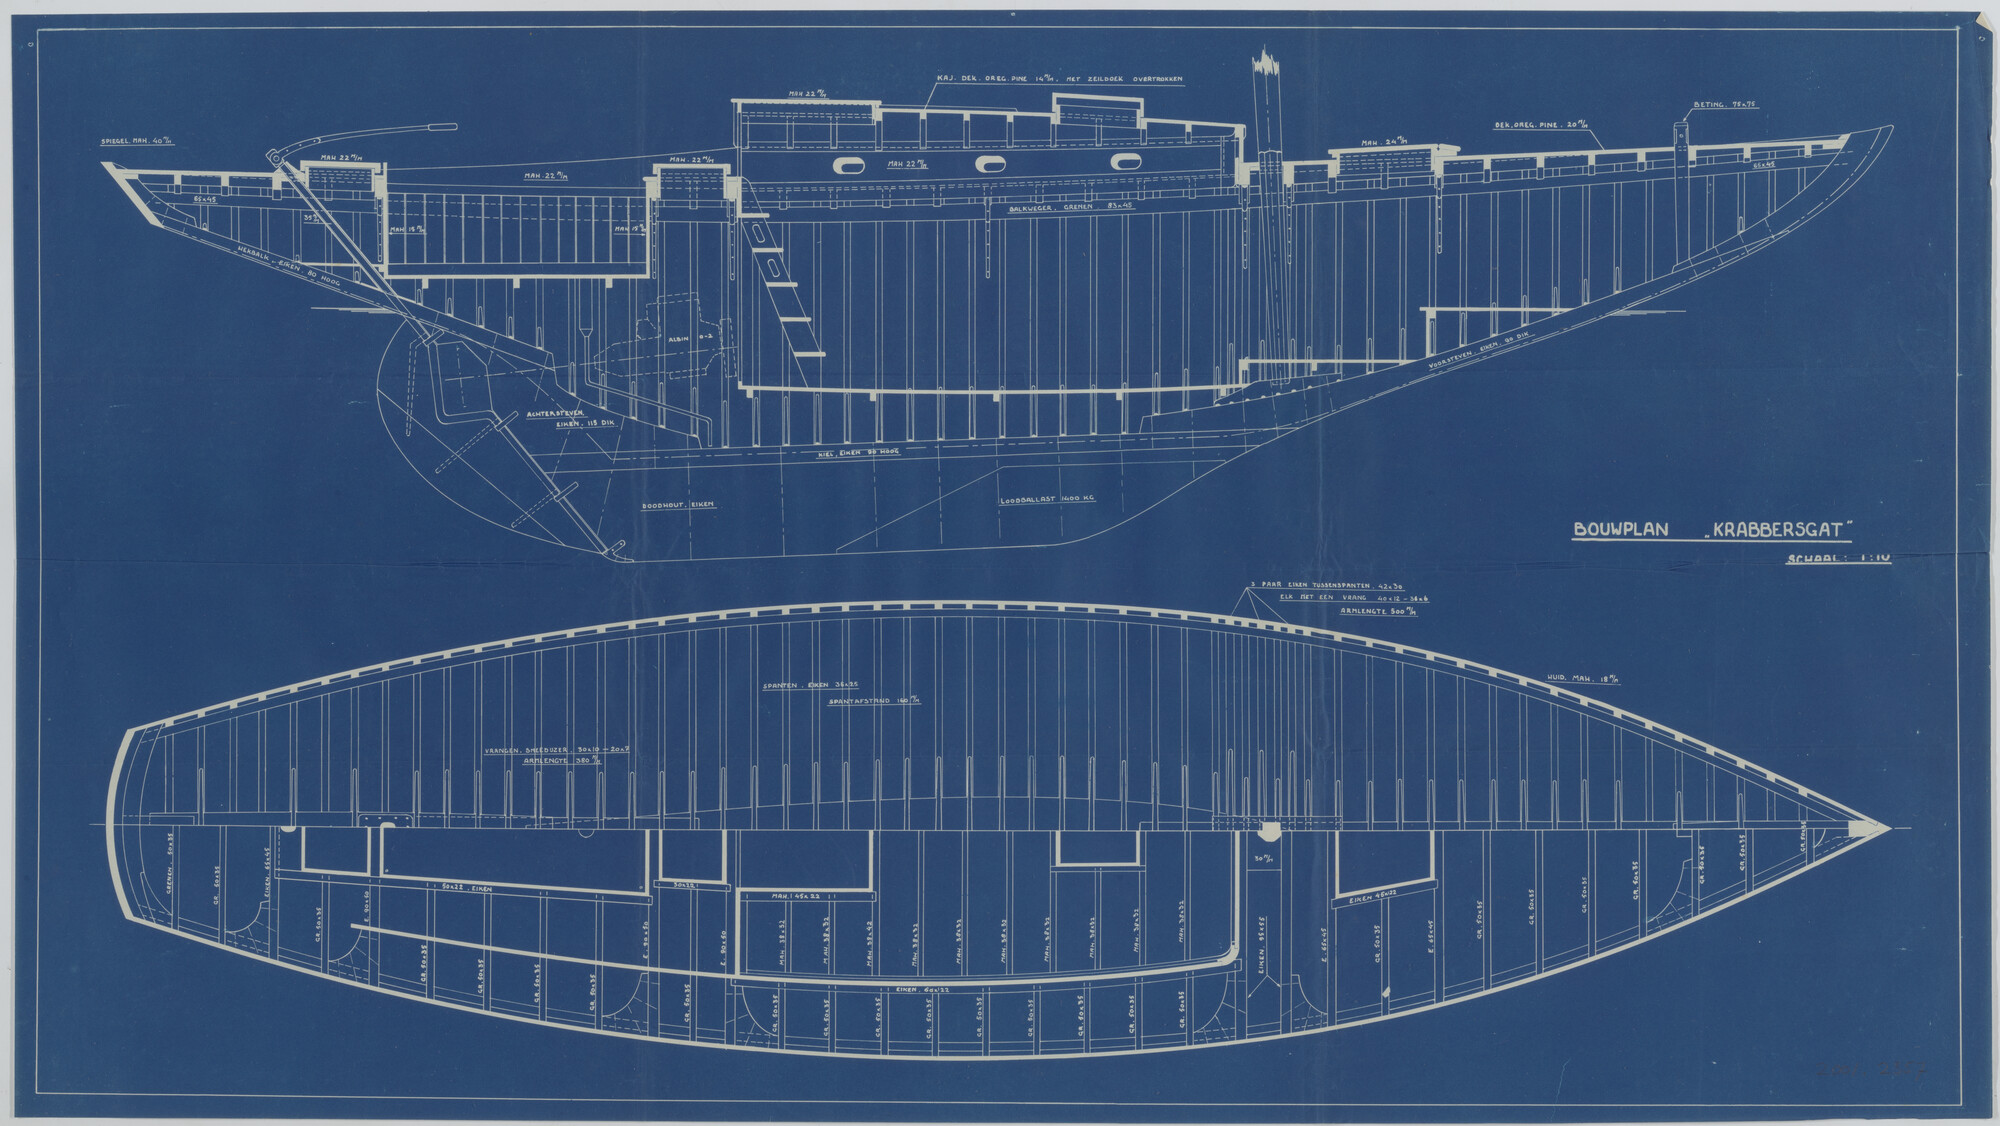 2001.2357; Constructietekening van de zeilkruiser Krabbersgat; technische tekening